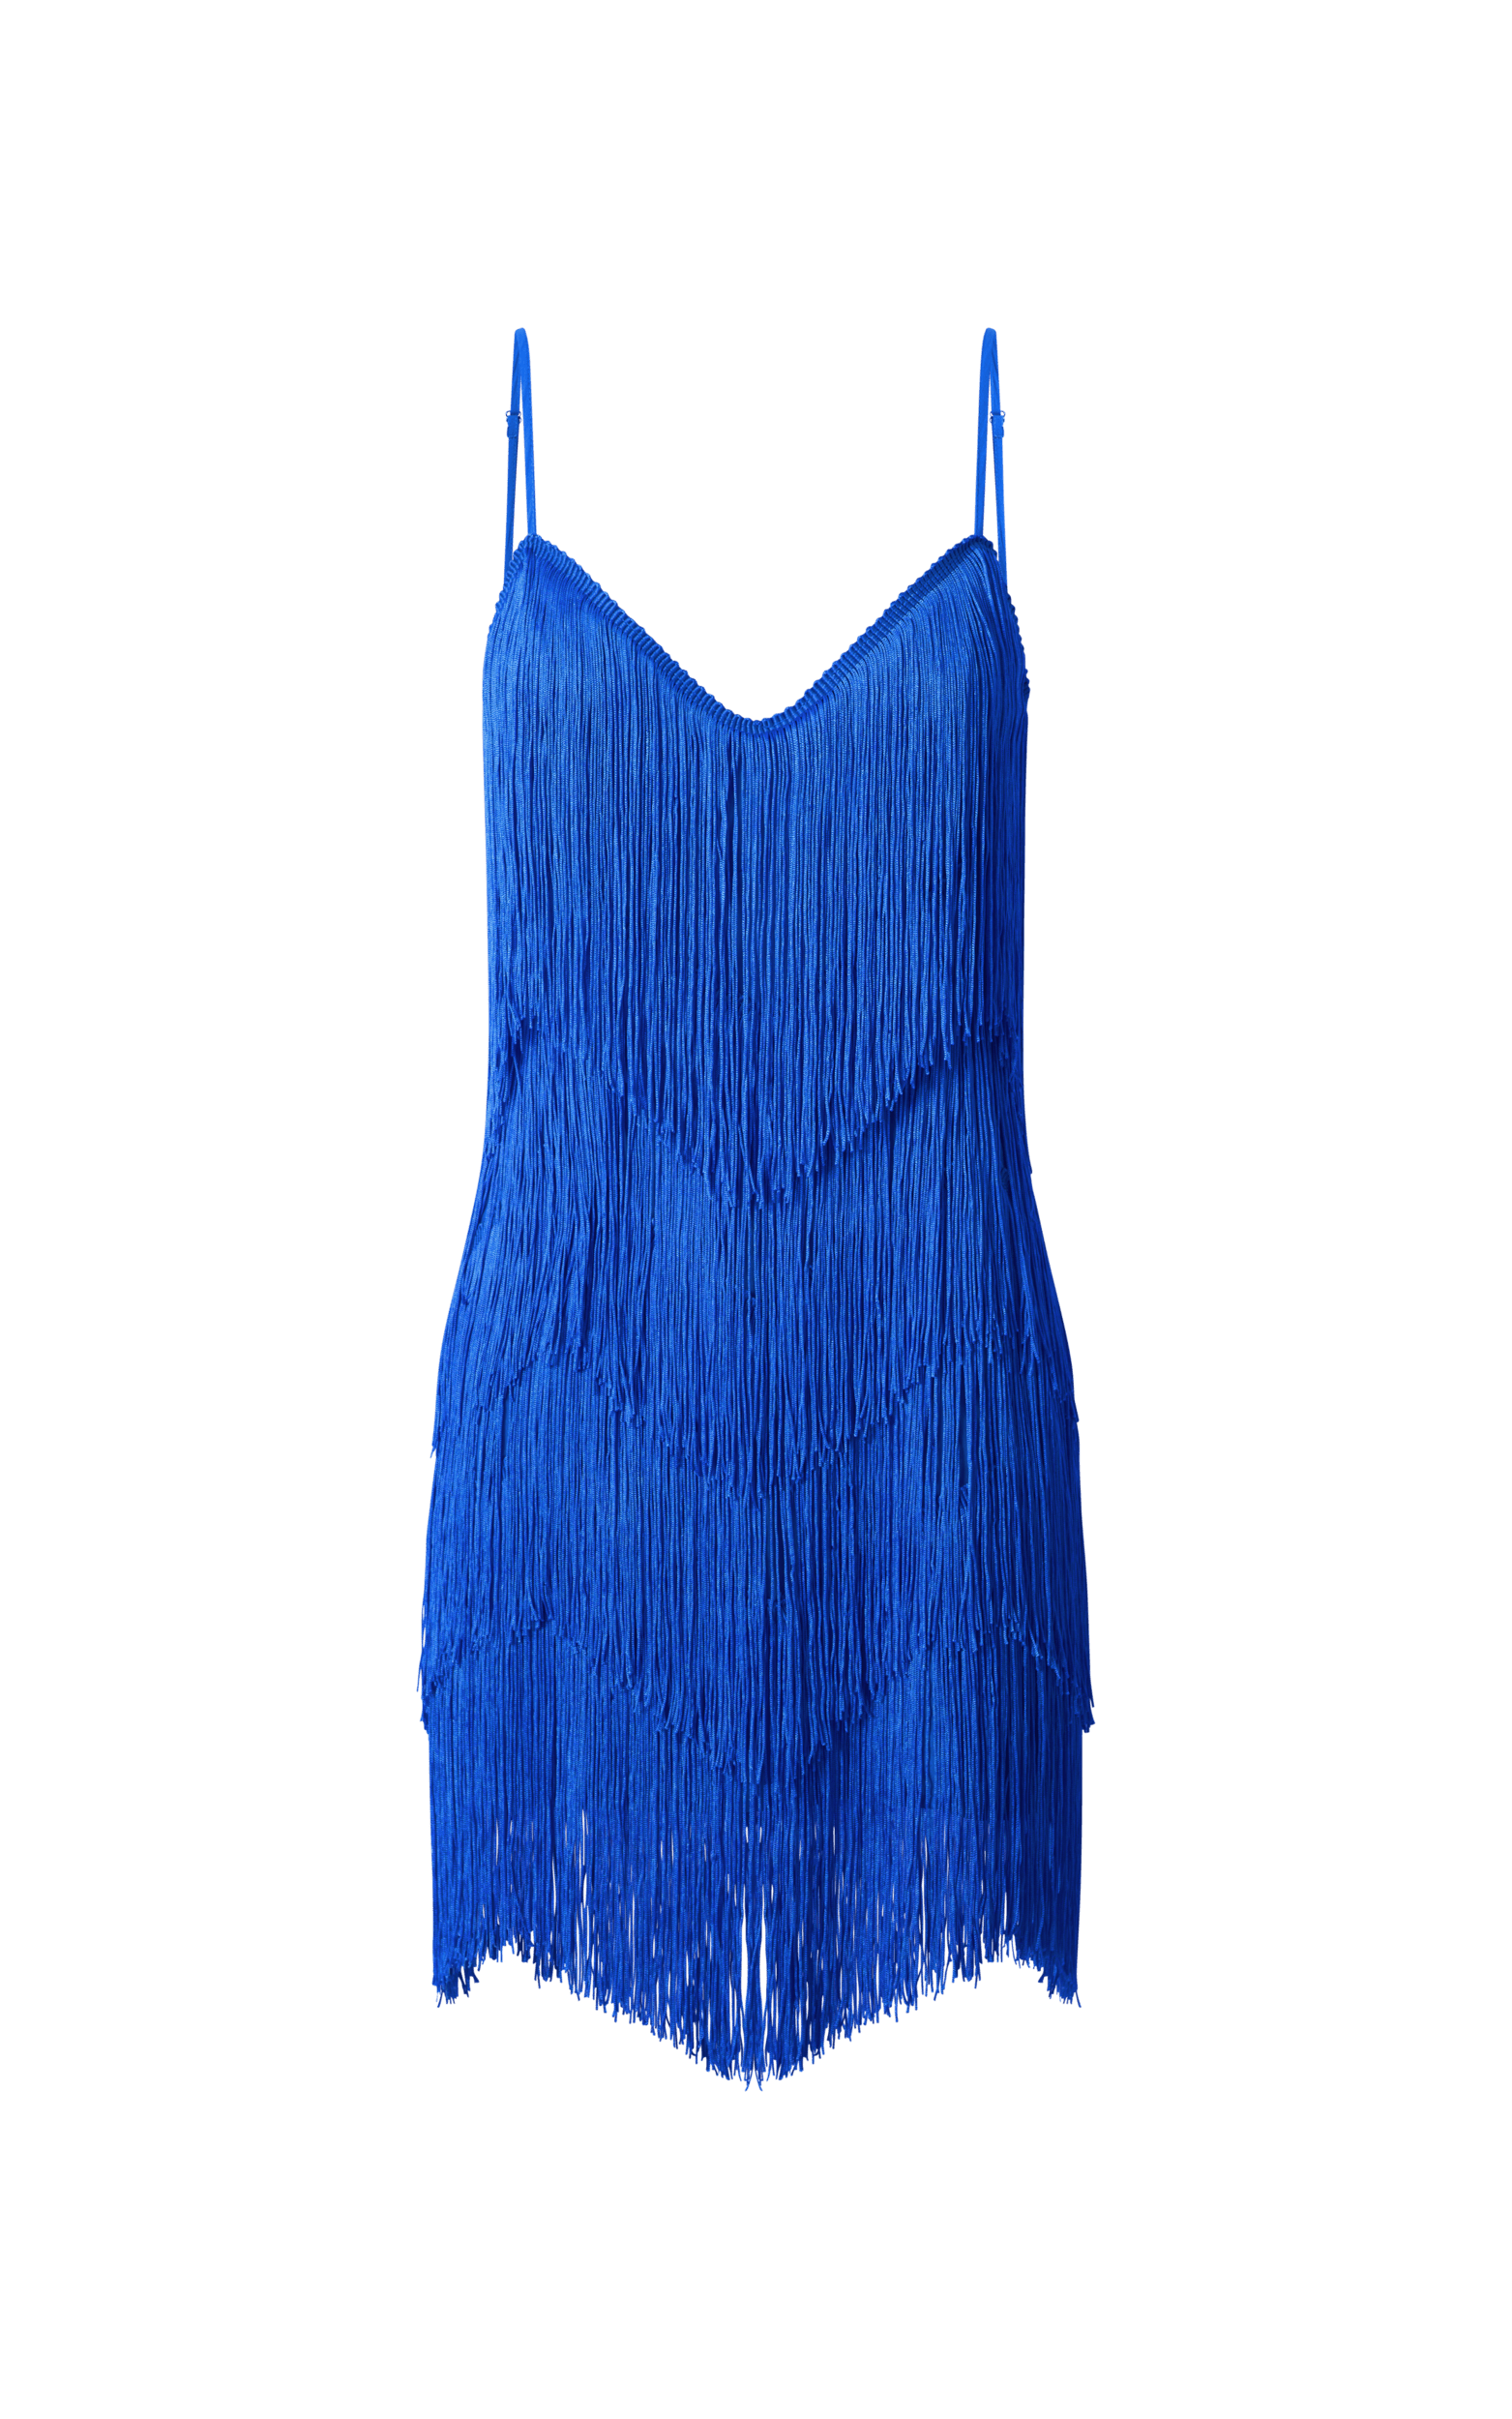 Siofra Mini Dress - Zig Zag Fringe Dress in Cobalt Blue | Showpo USA